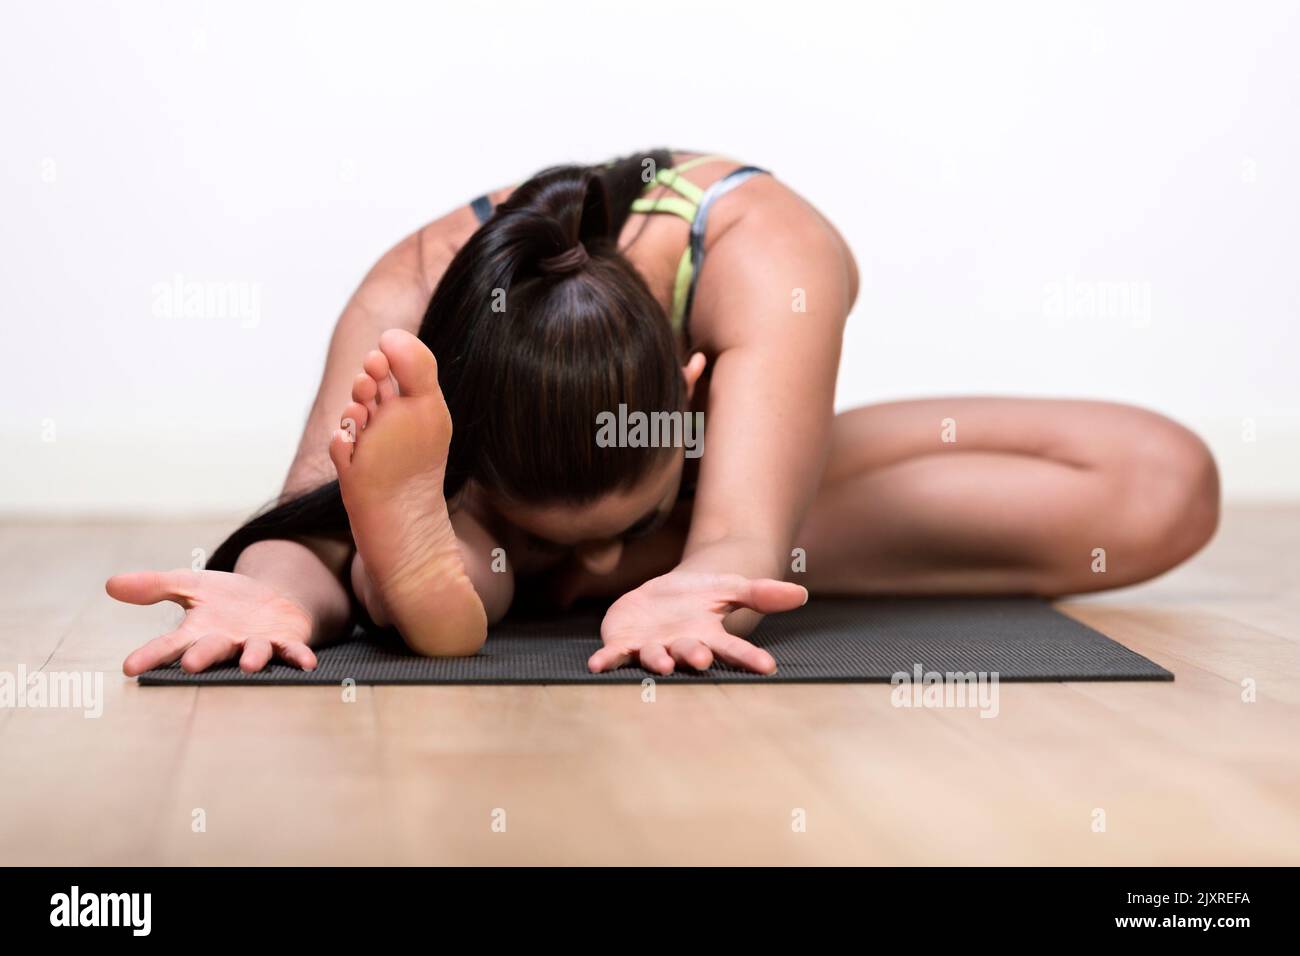 Une seule femme de yoga, de race blanche, âgée de 30 ans, pose contre un mur blanc Banque D'Images